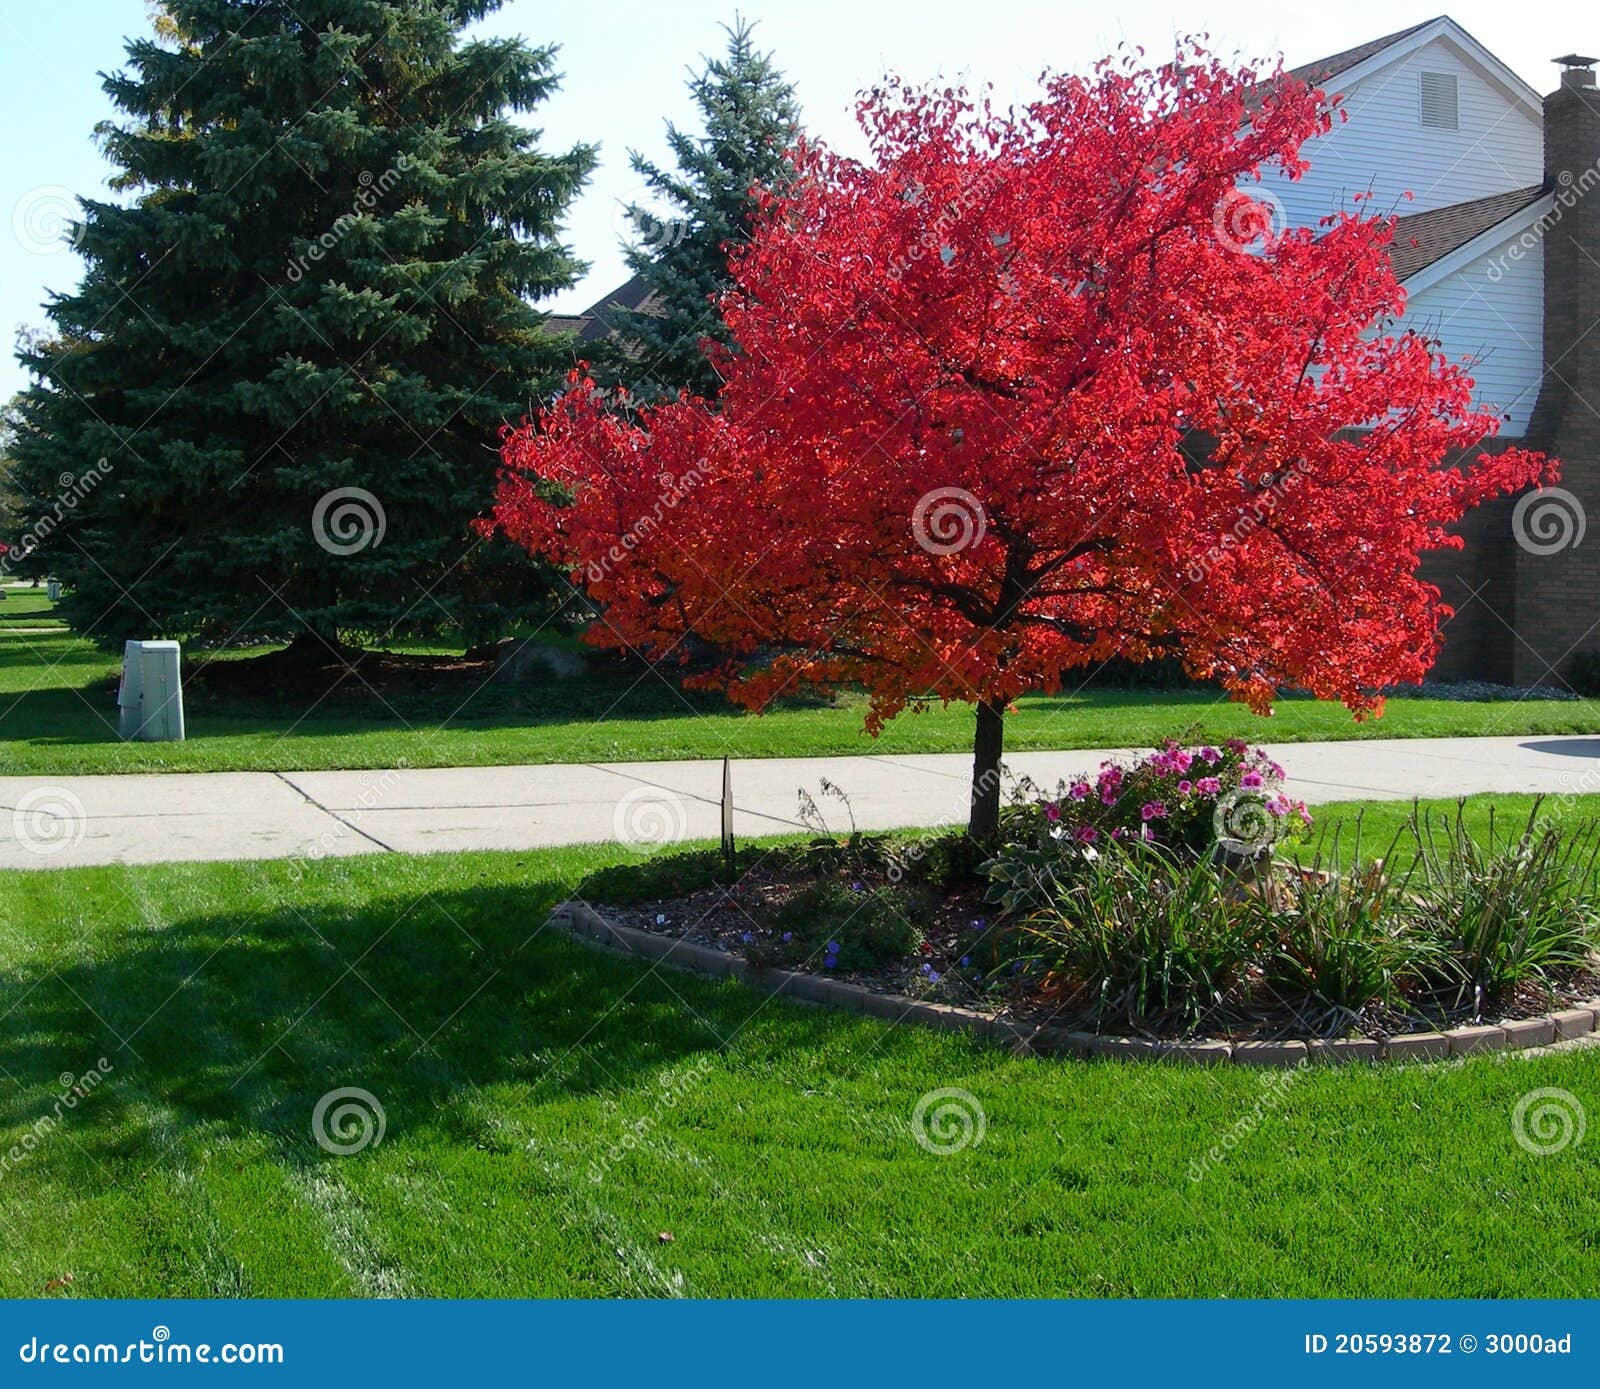 Baum Im Herbst Mit Vibrierenden Roten Blättern ...